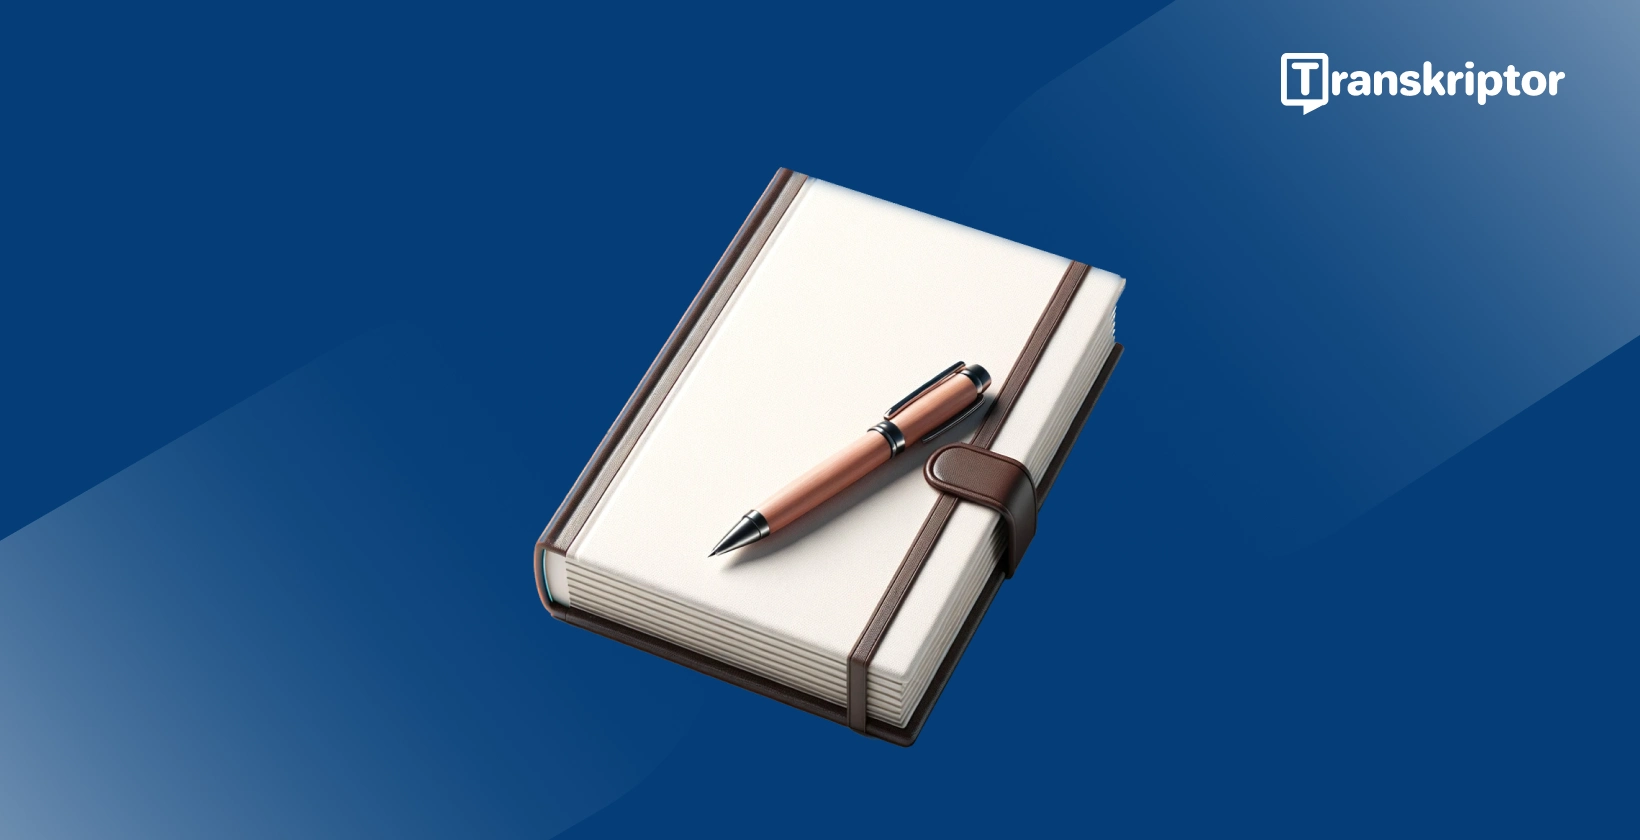 Saneluohjelmisto kirjoittajille, jossa näkyy muistikirja ja kynä, joka symboloi kirjoitustyökaluja.